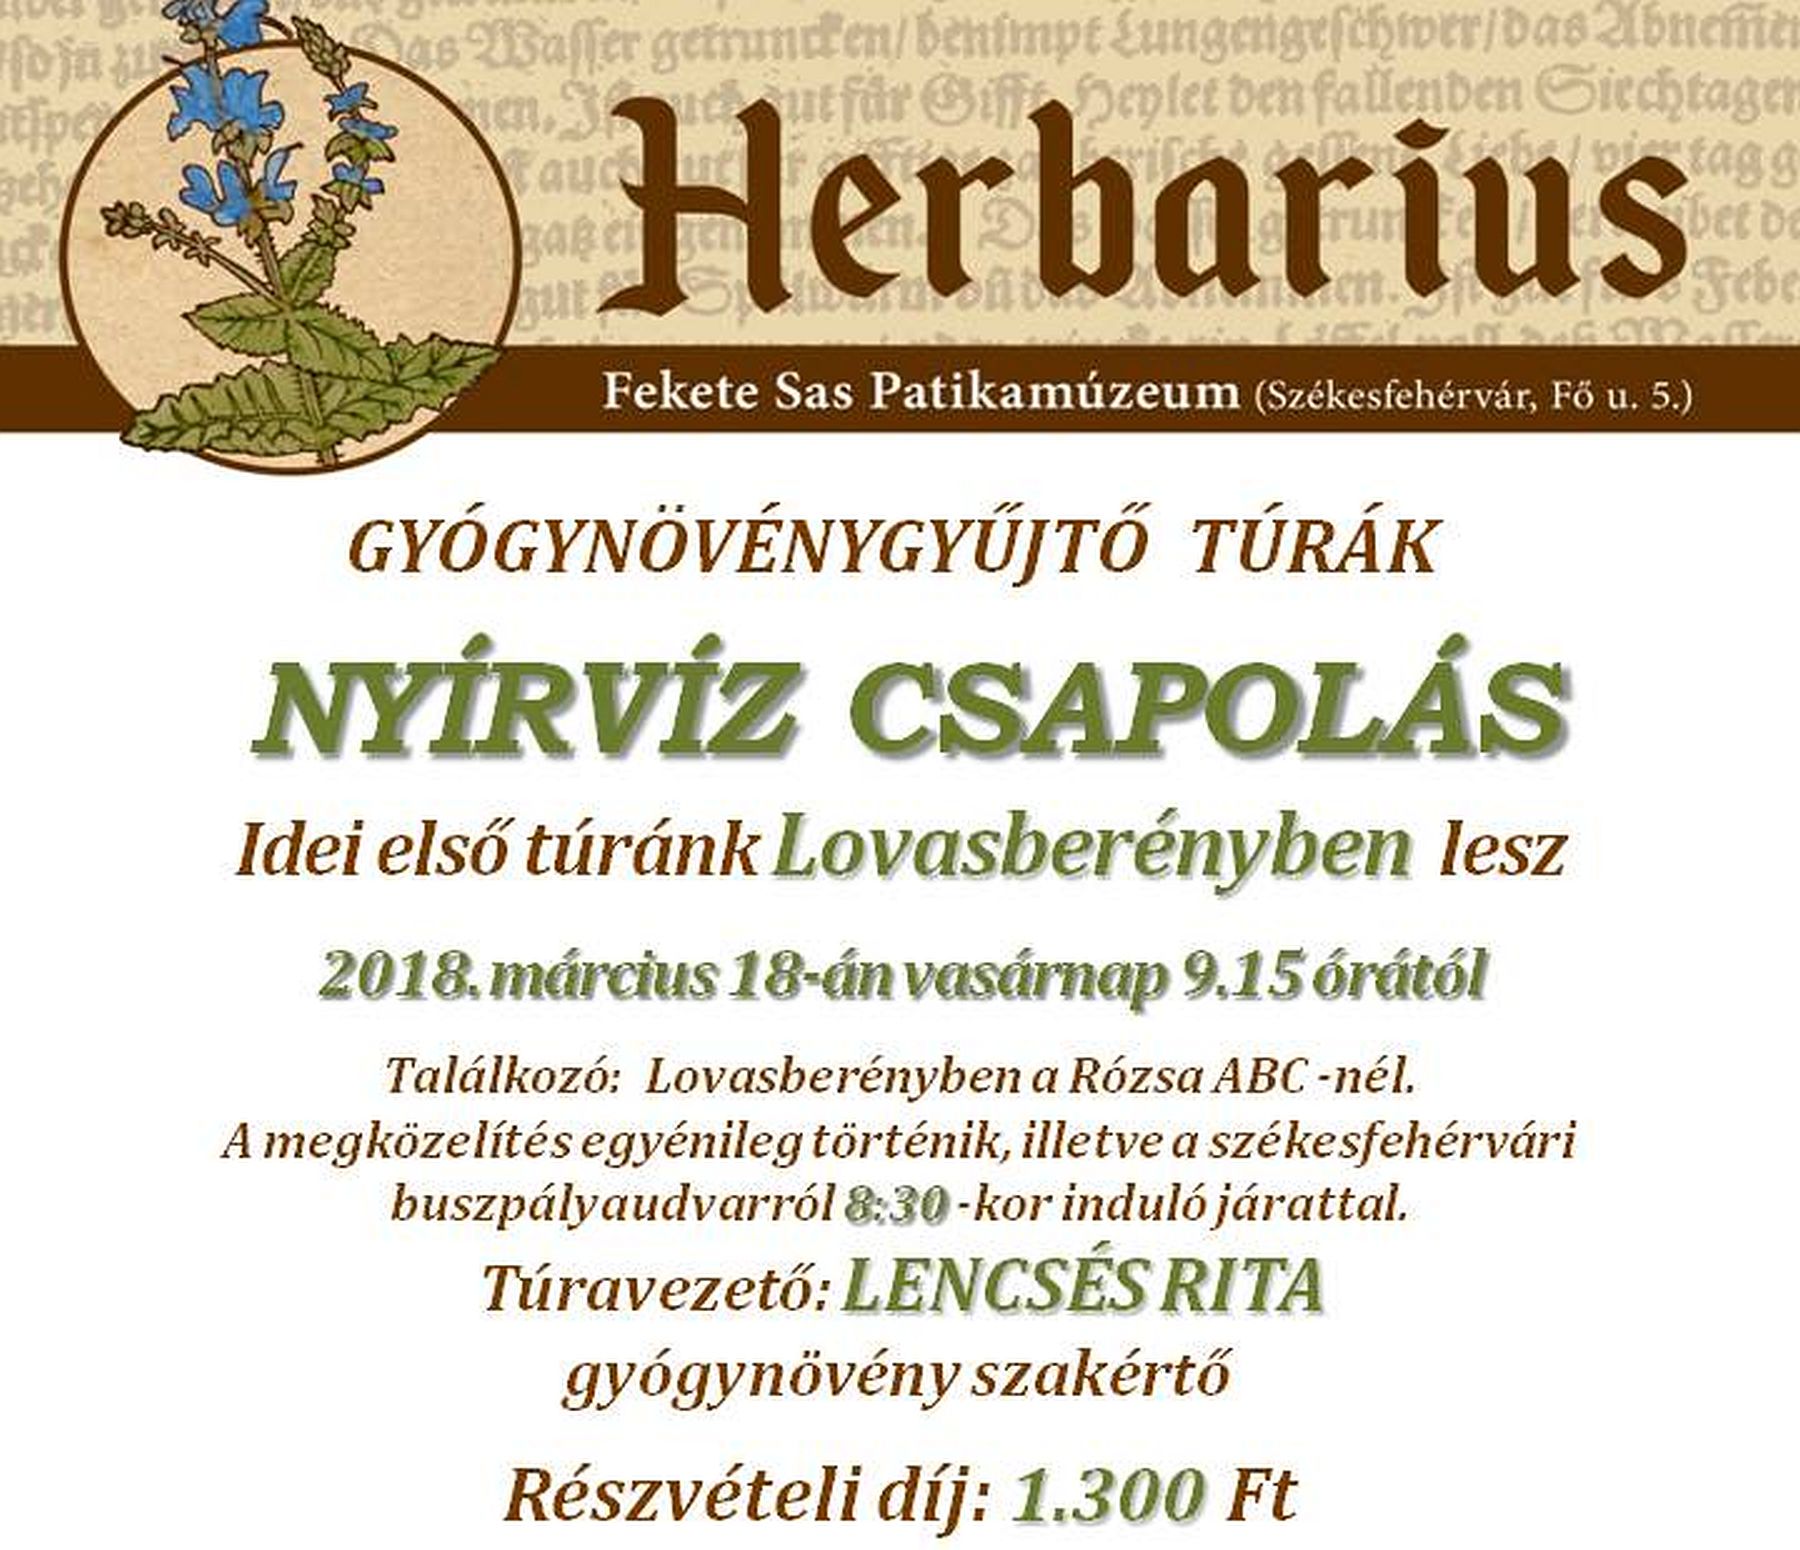 Az erdő kincse a virics - az első tavaszi Herbarius túra célpontja Lovasberény lesz